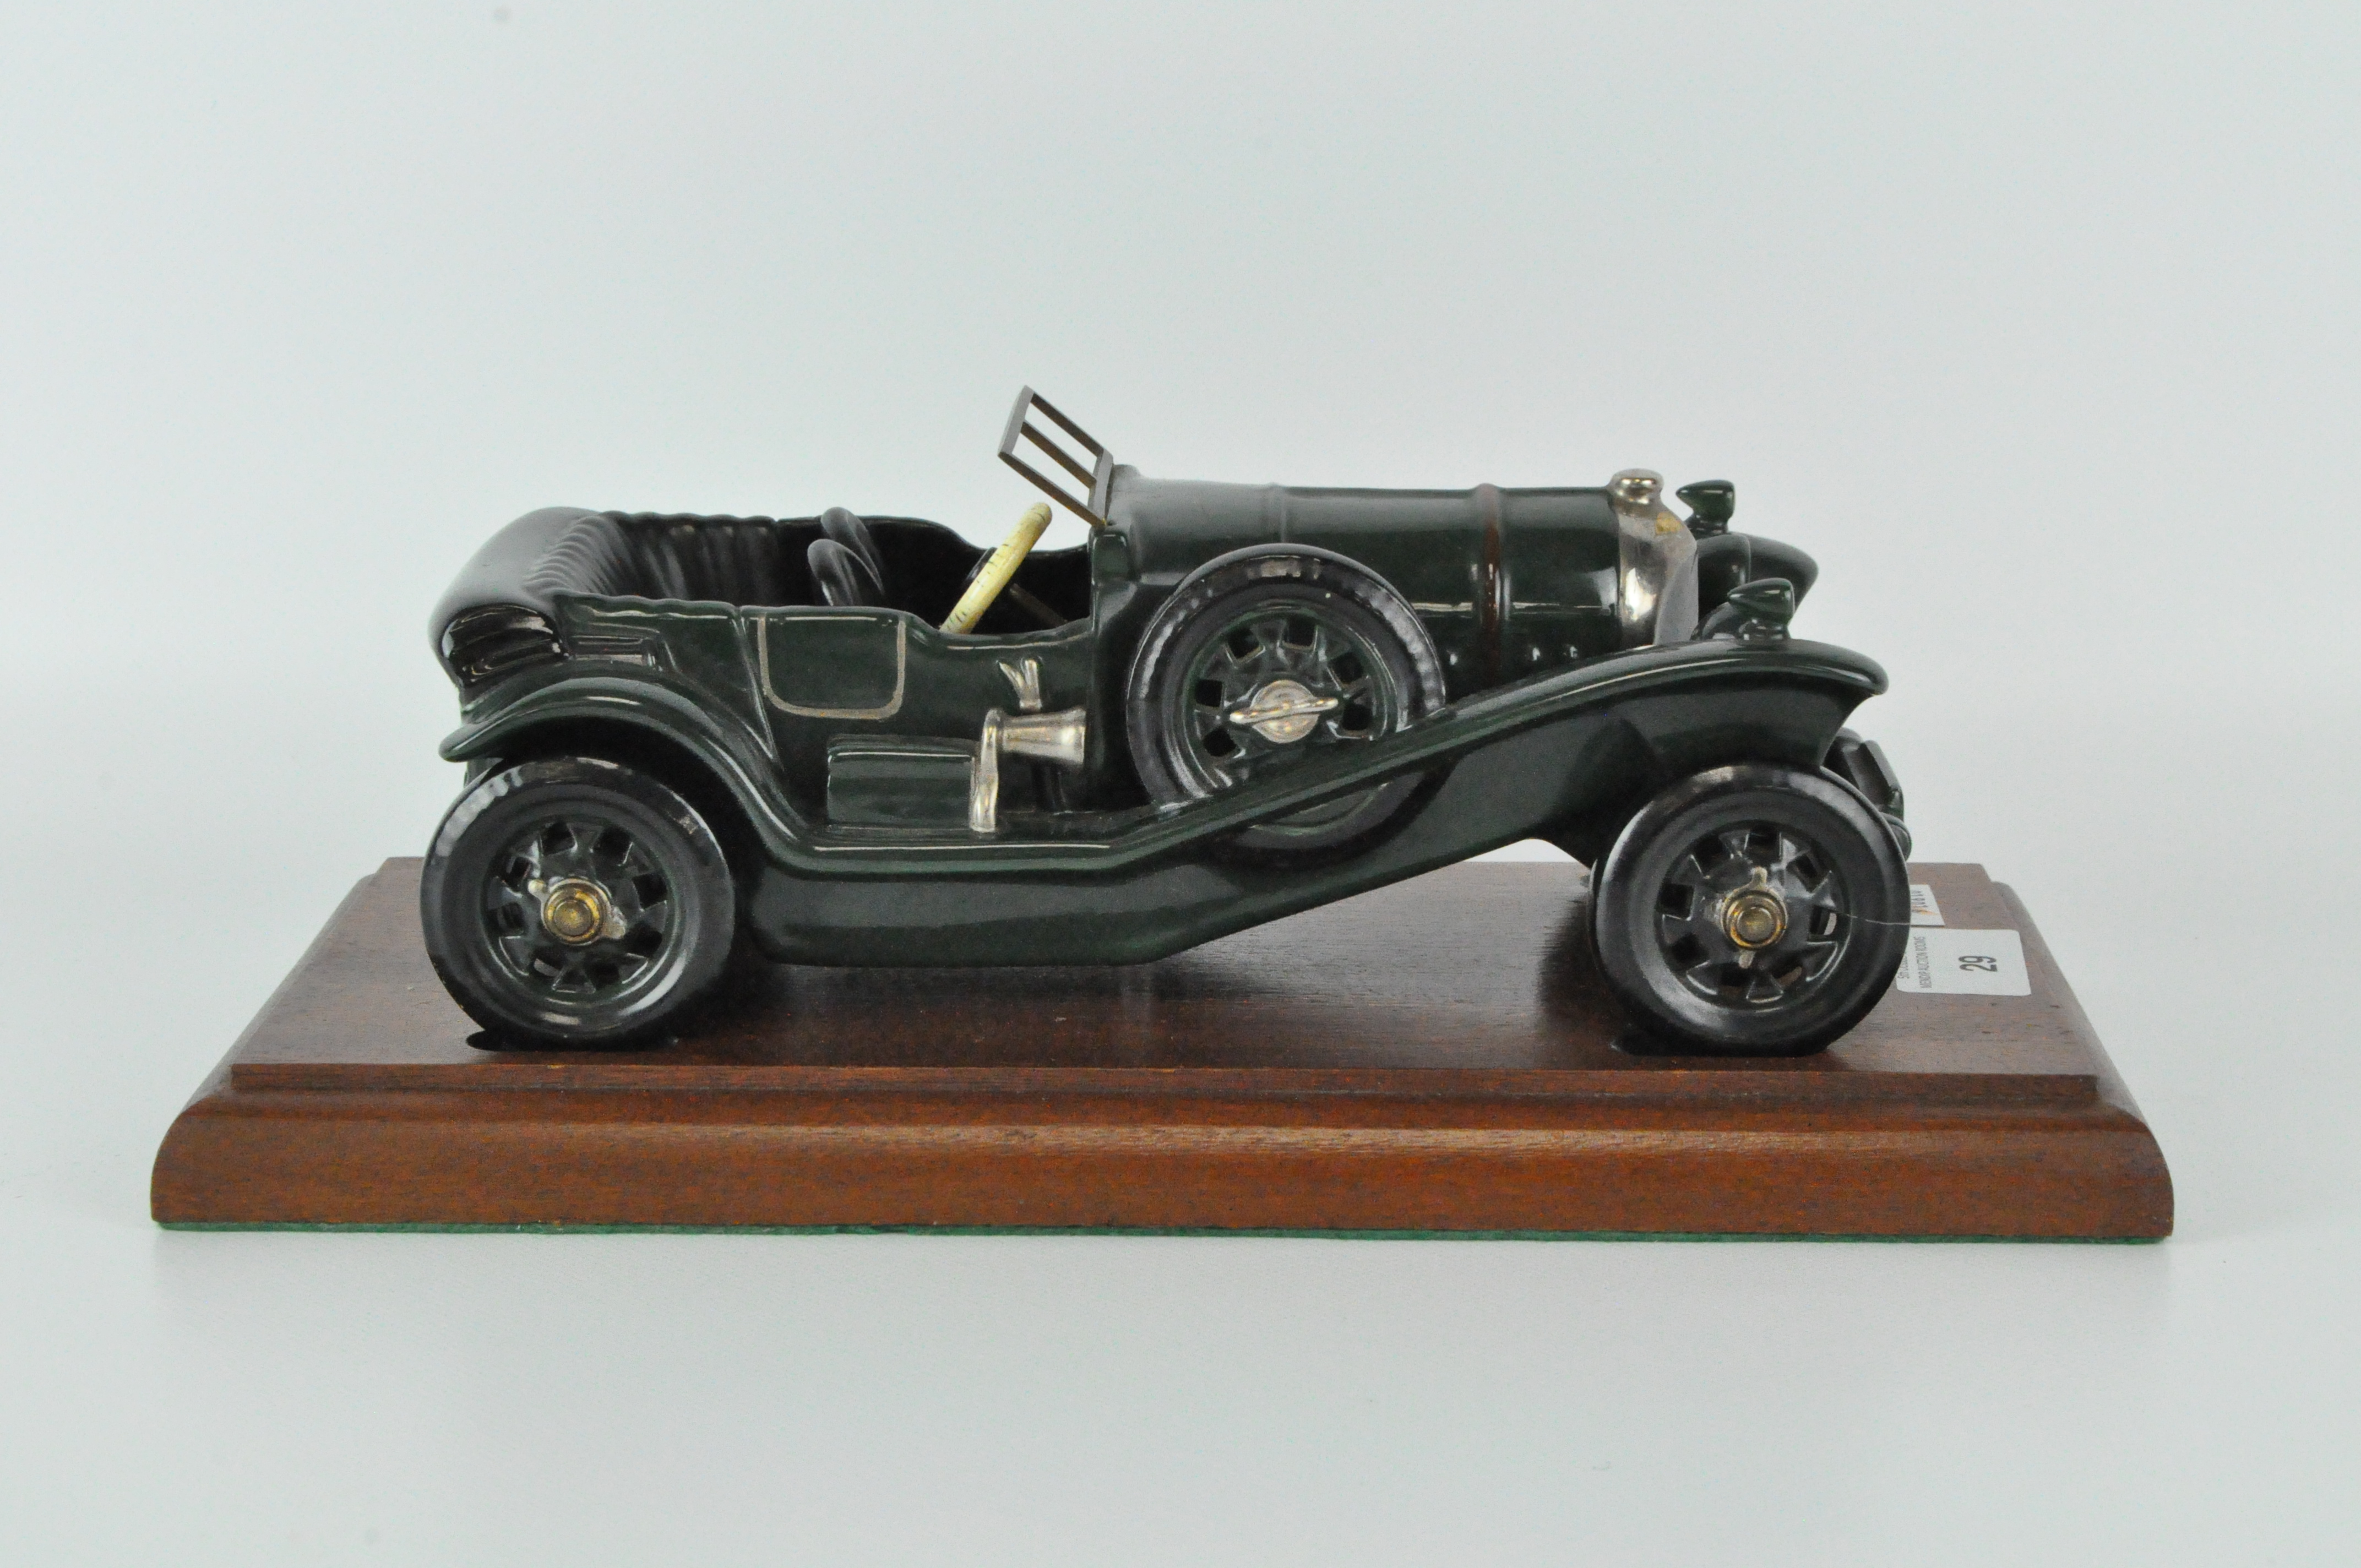 A limited edition Bentley Coalport model No 49,